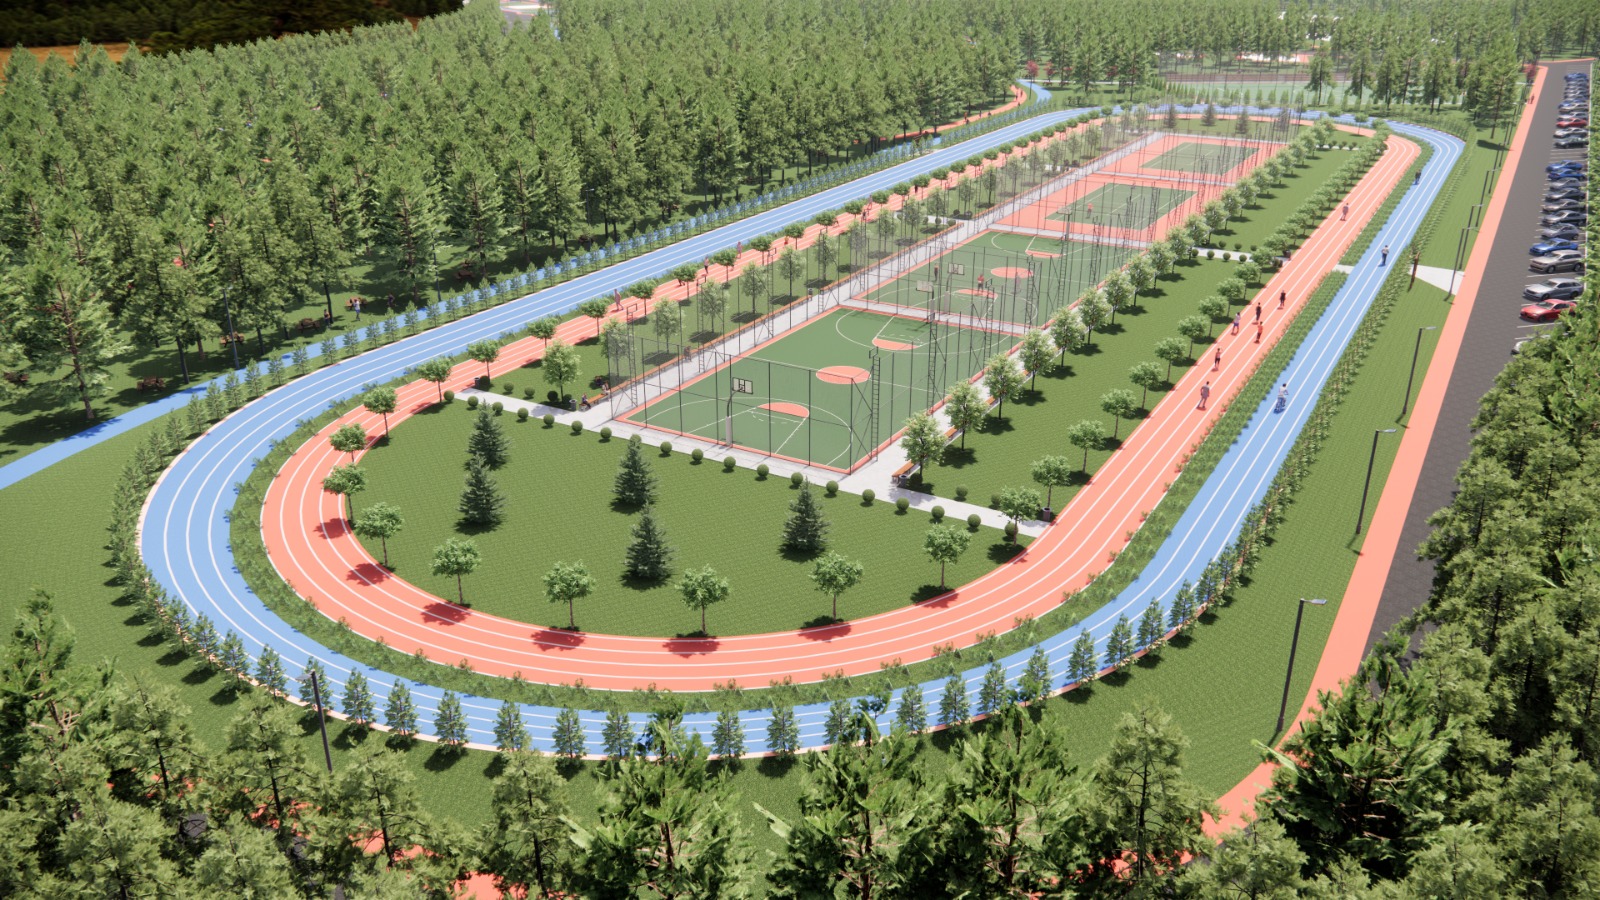 İstanbul’un En Büyük Spor Ormanı Beykoz’da Kuruluyor